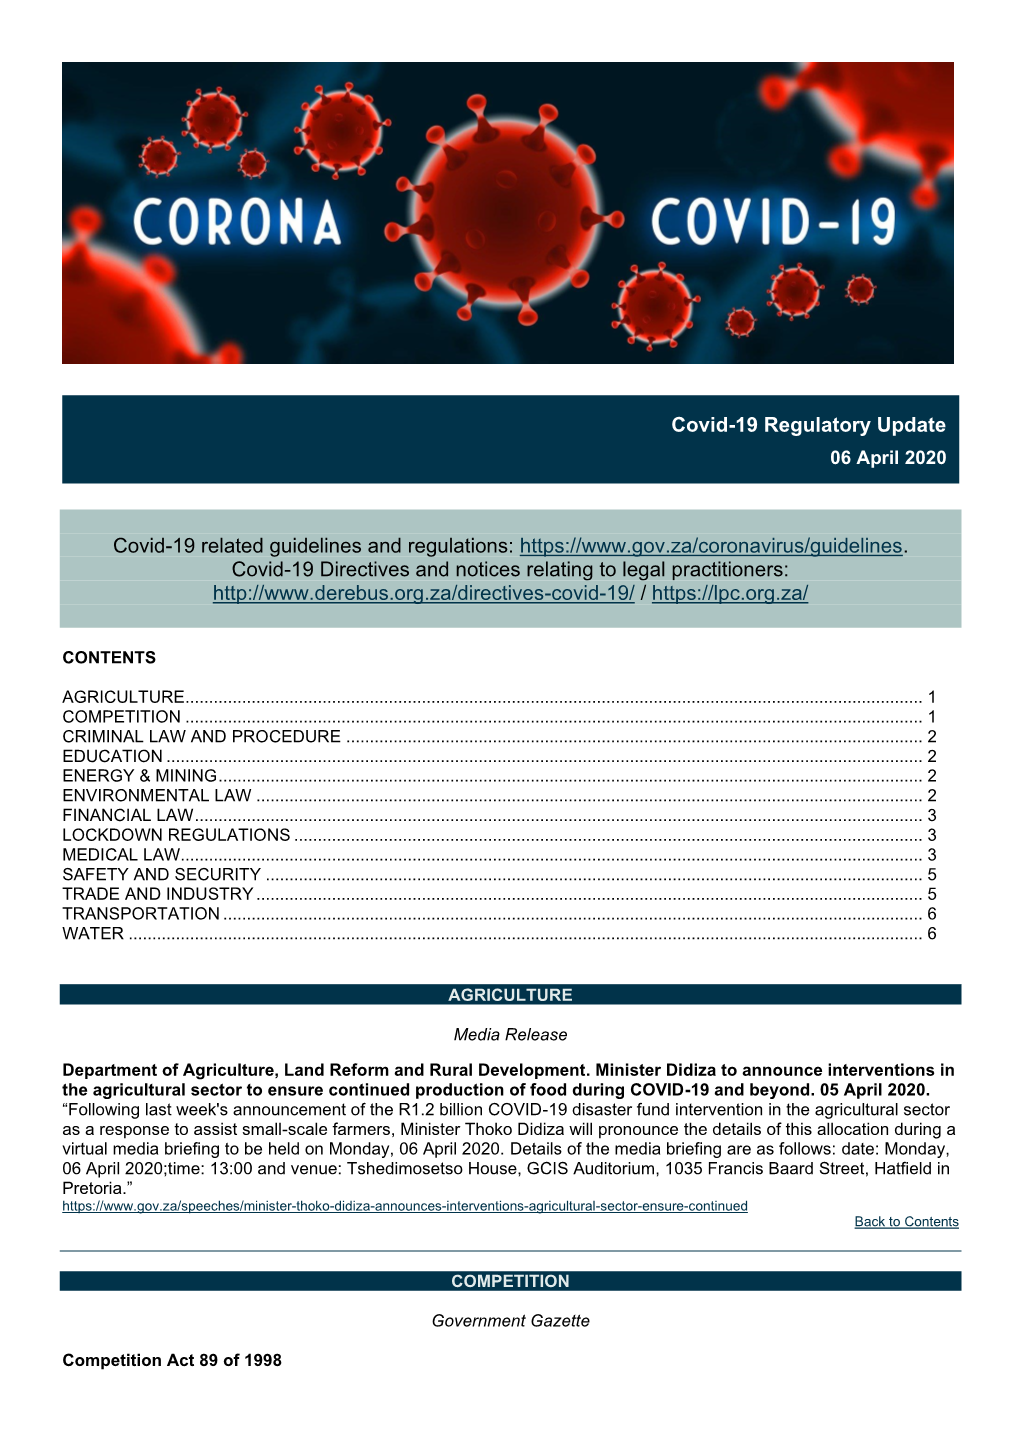 Covid-19 Regulatory Update 06Apr2020